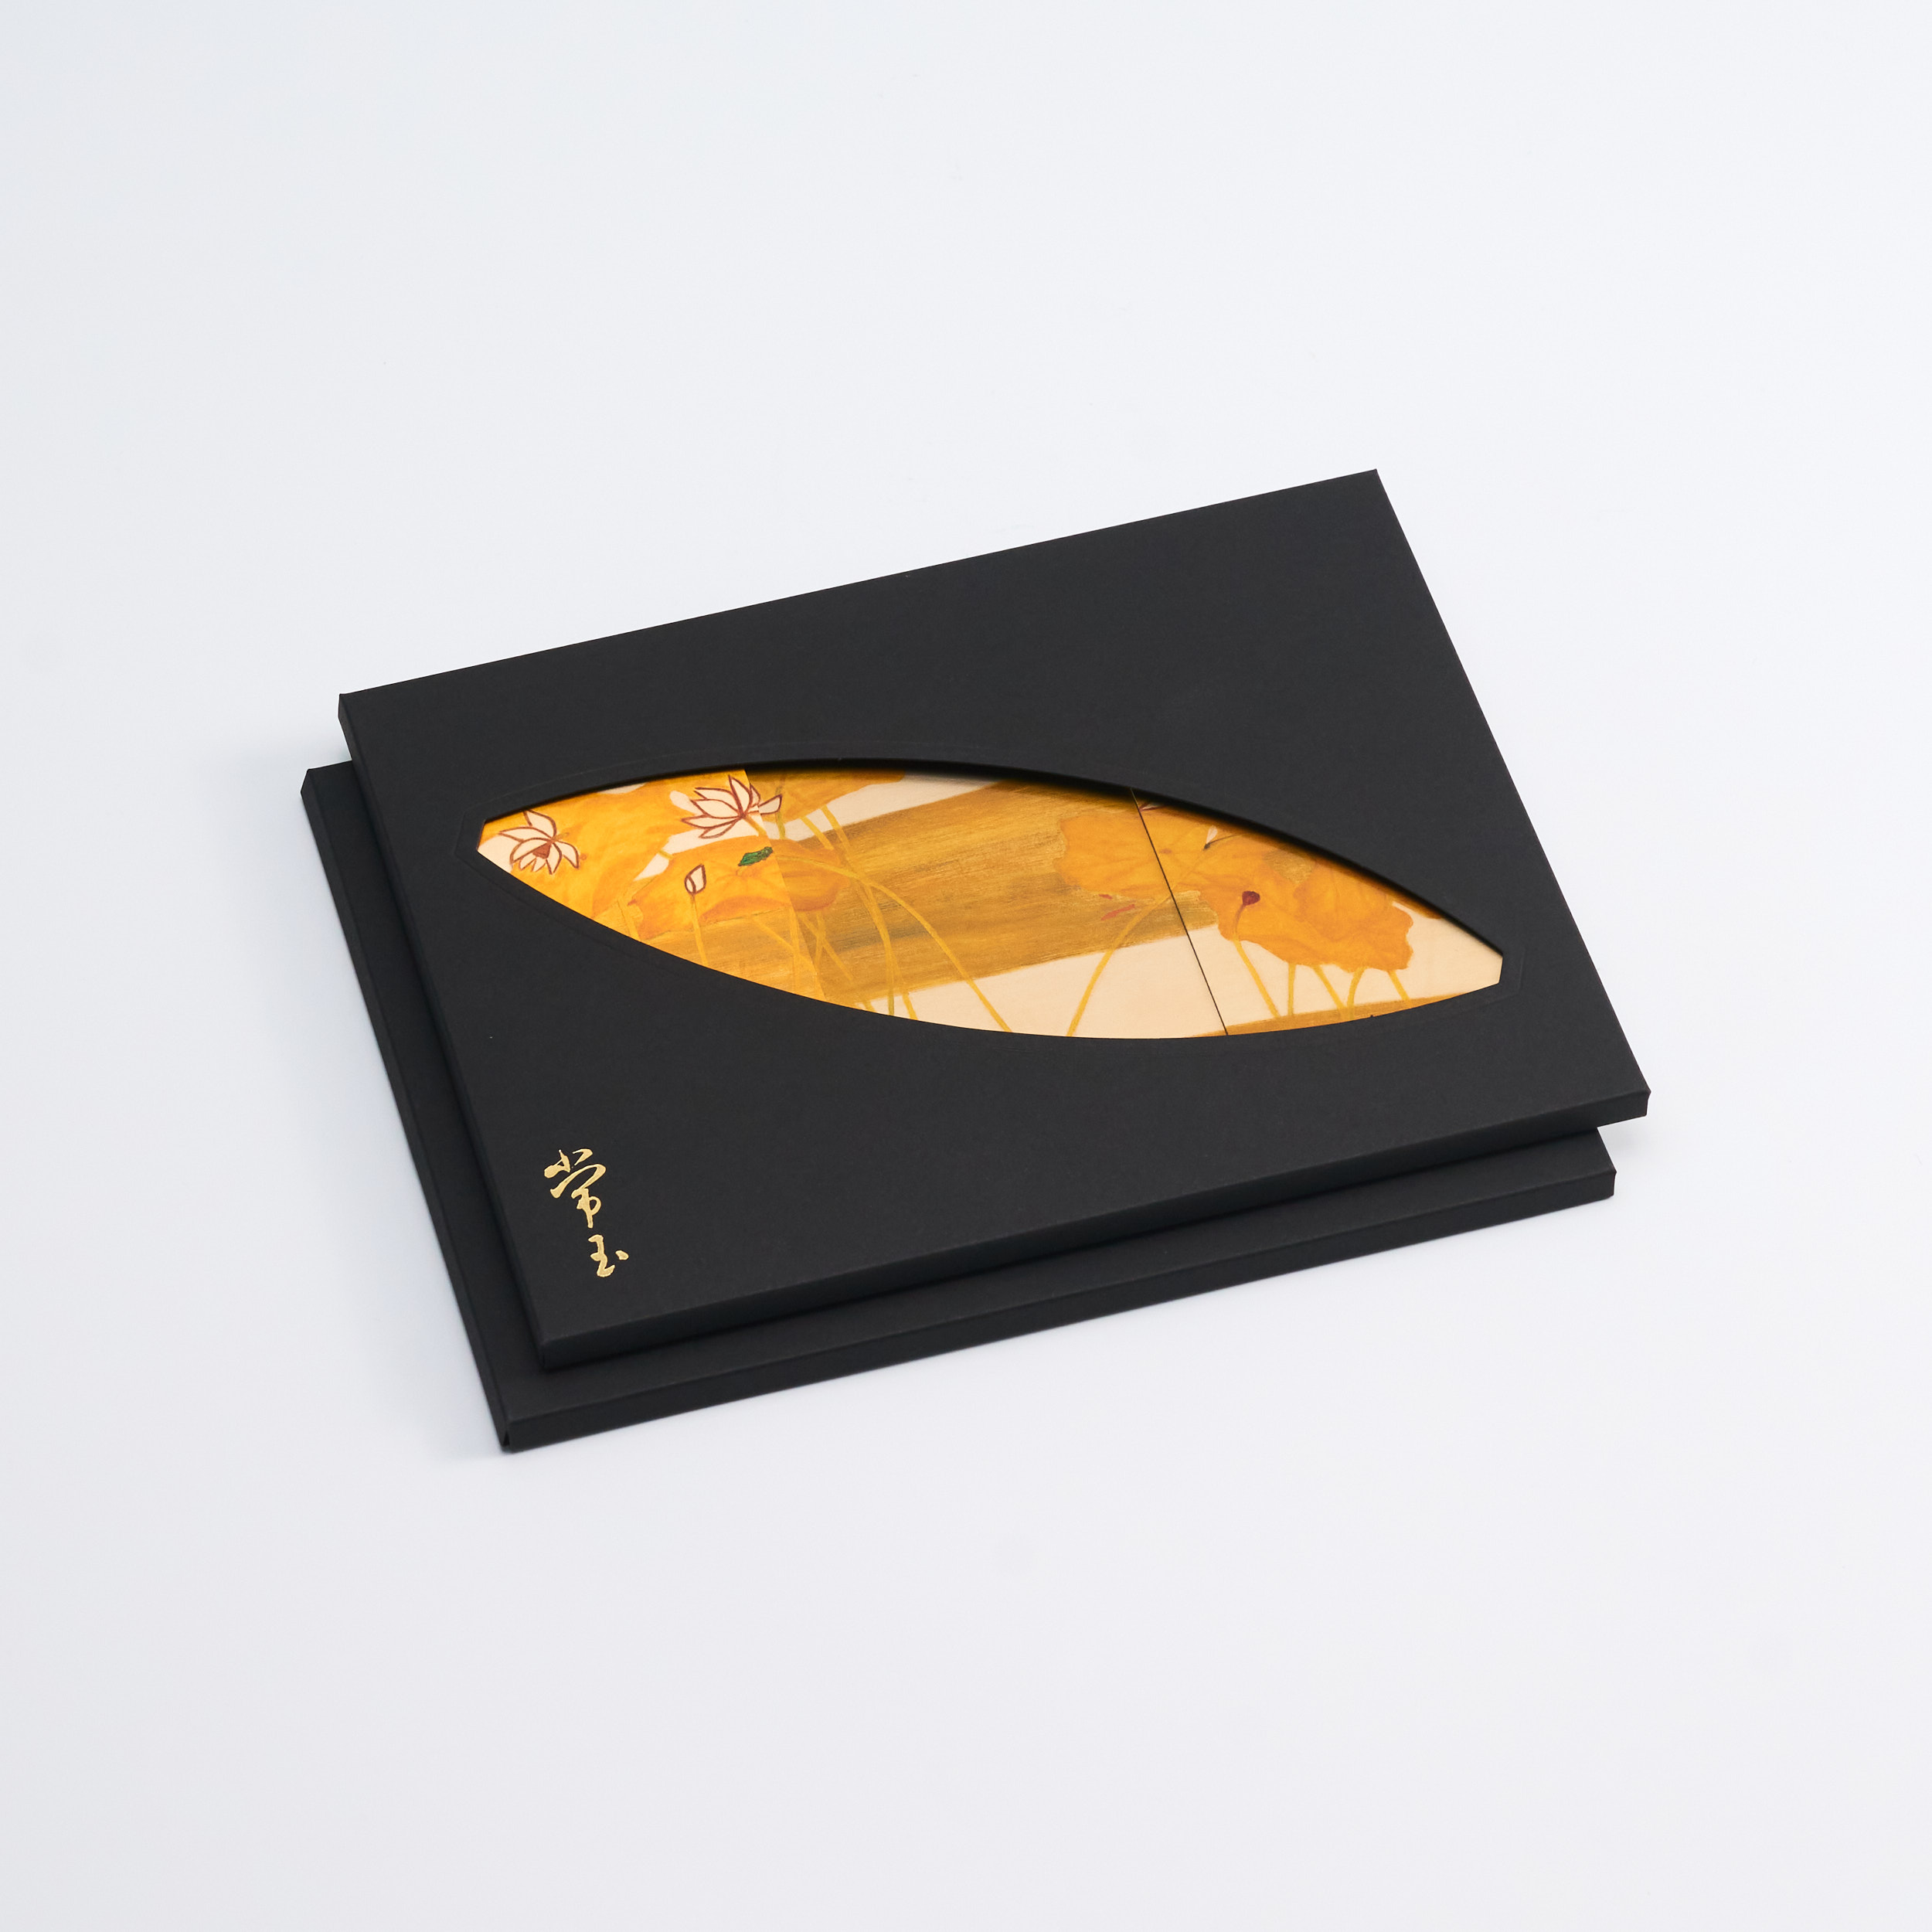 金質常玉手箋禮盒-荷花  Sanyu Golden Treasures Notepad Giftbox-Lotus